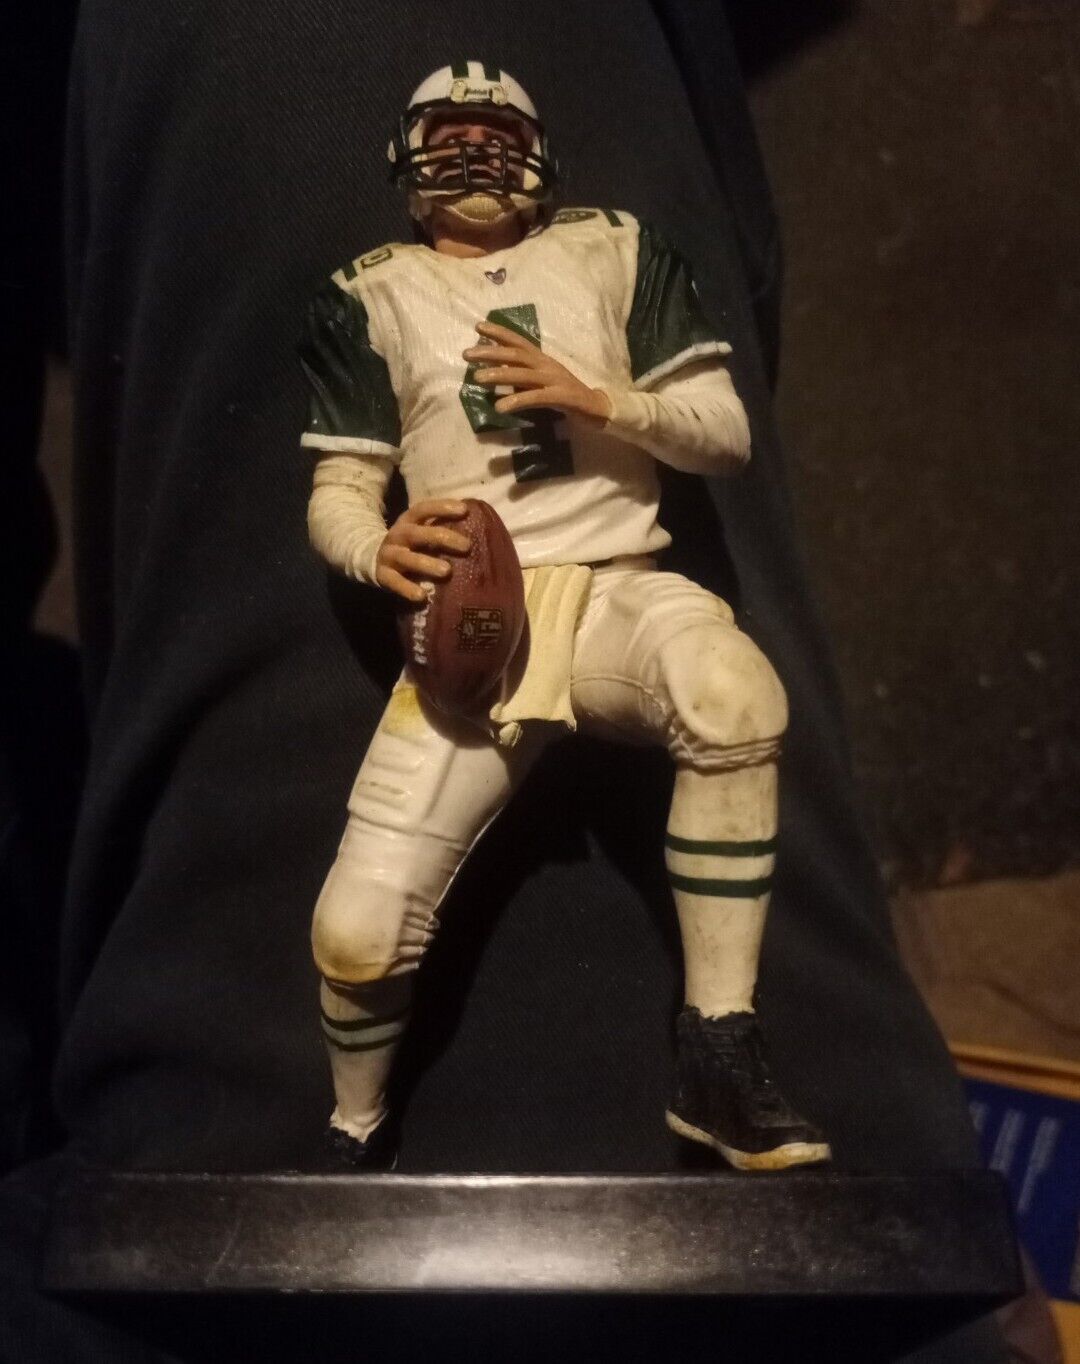 PLAYERS INC. TMP INT. Brett Favre New York Jets #4 Figurine Plastic 7” 2008